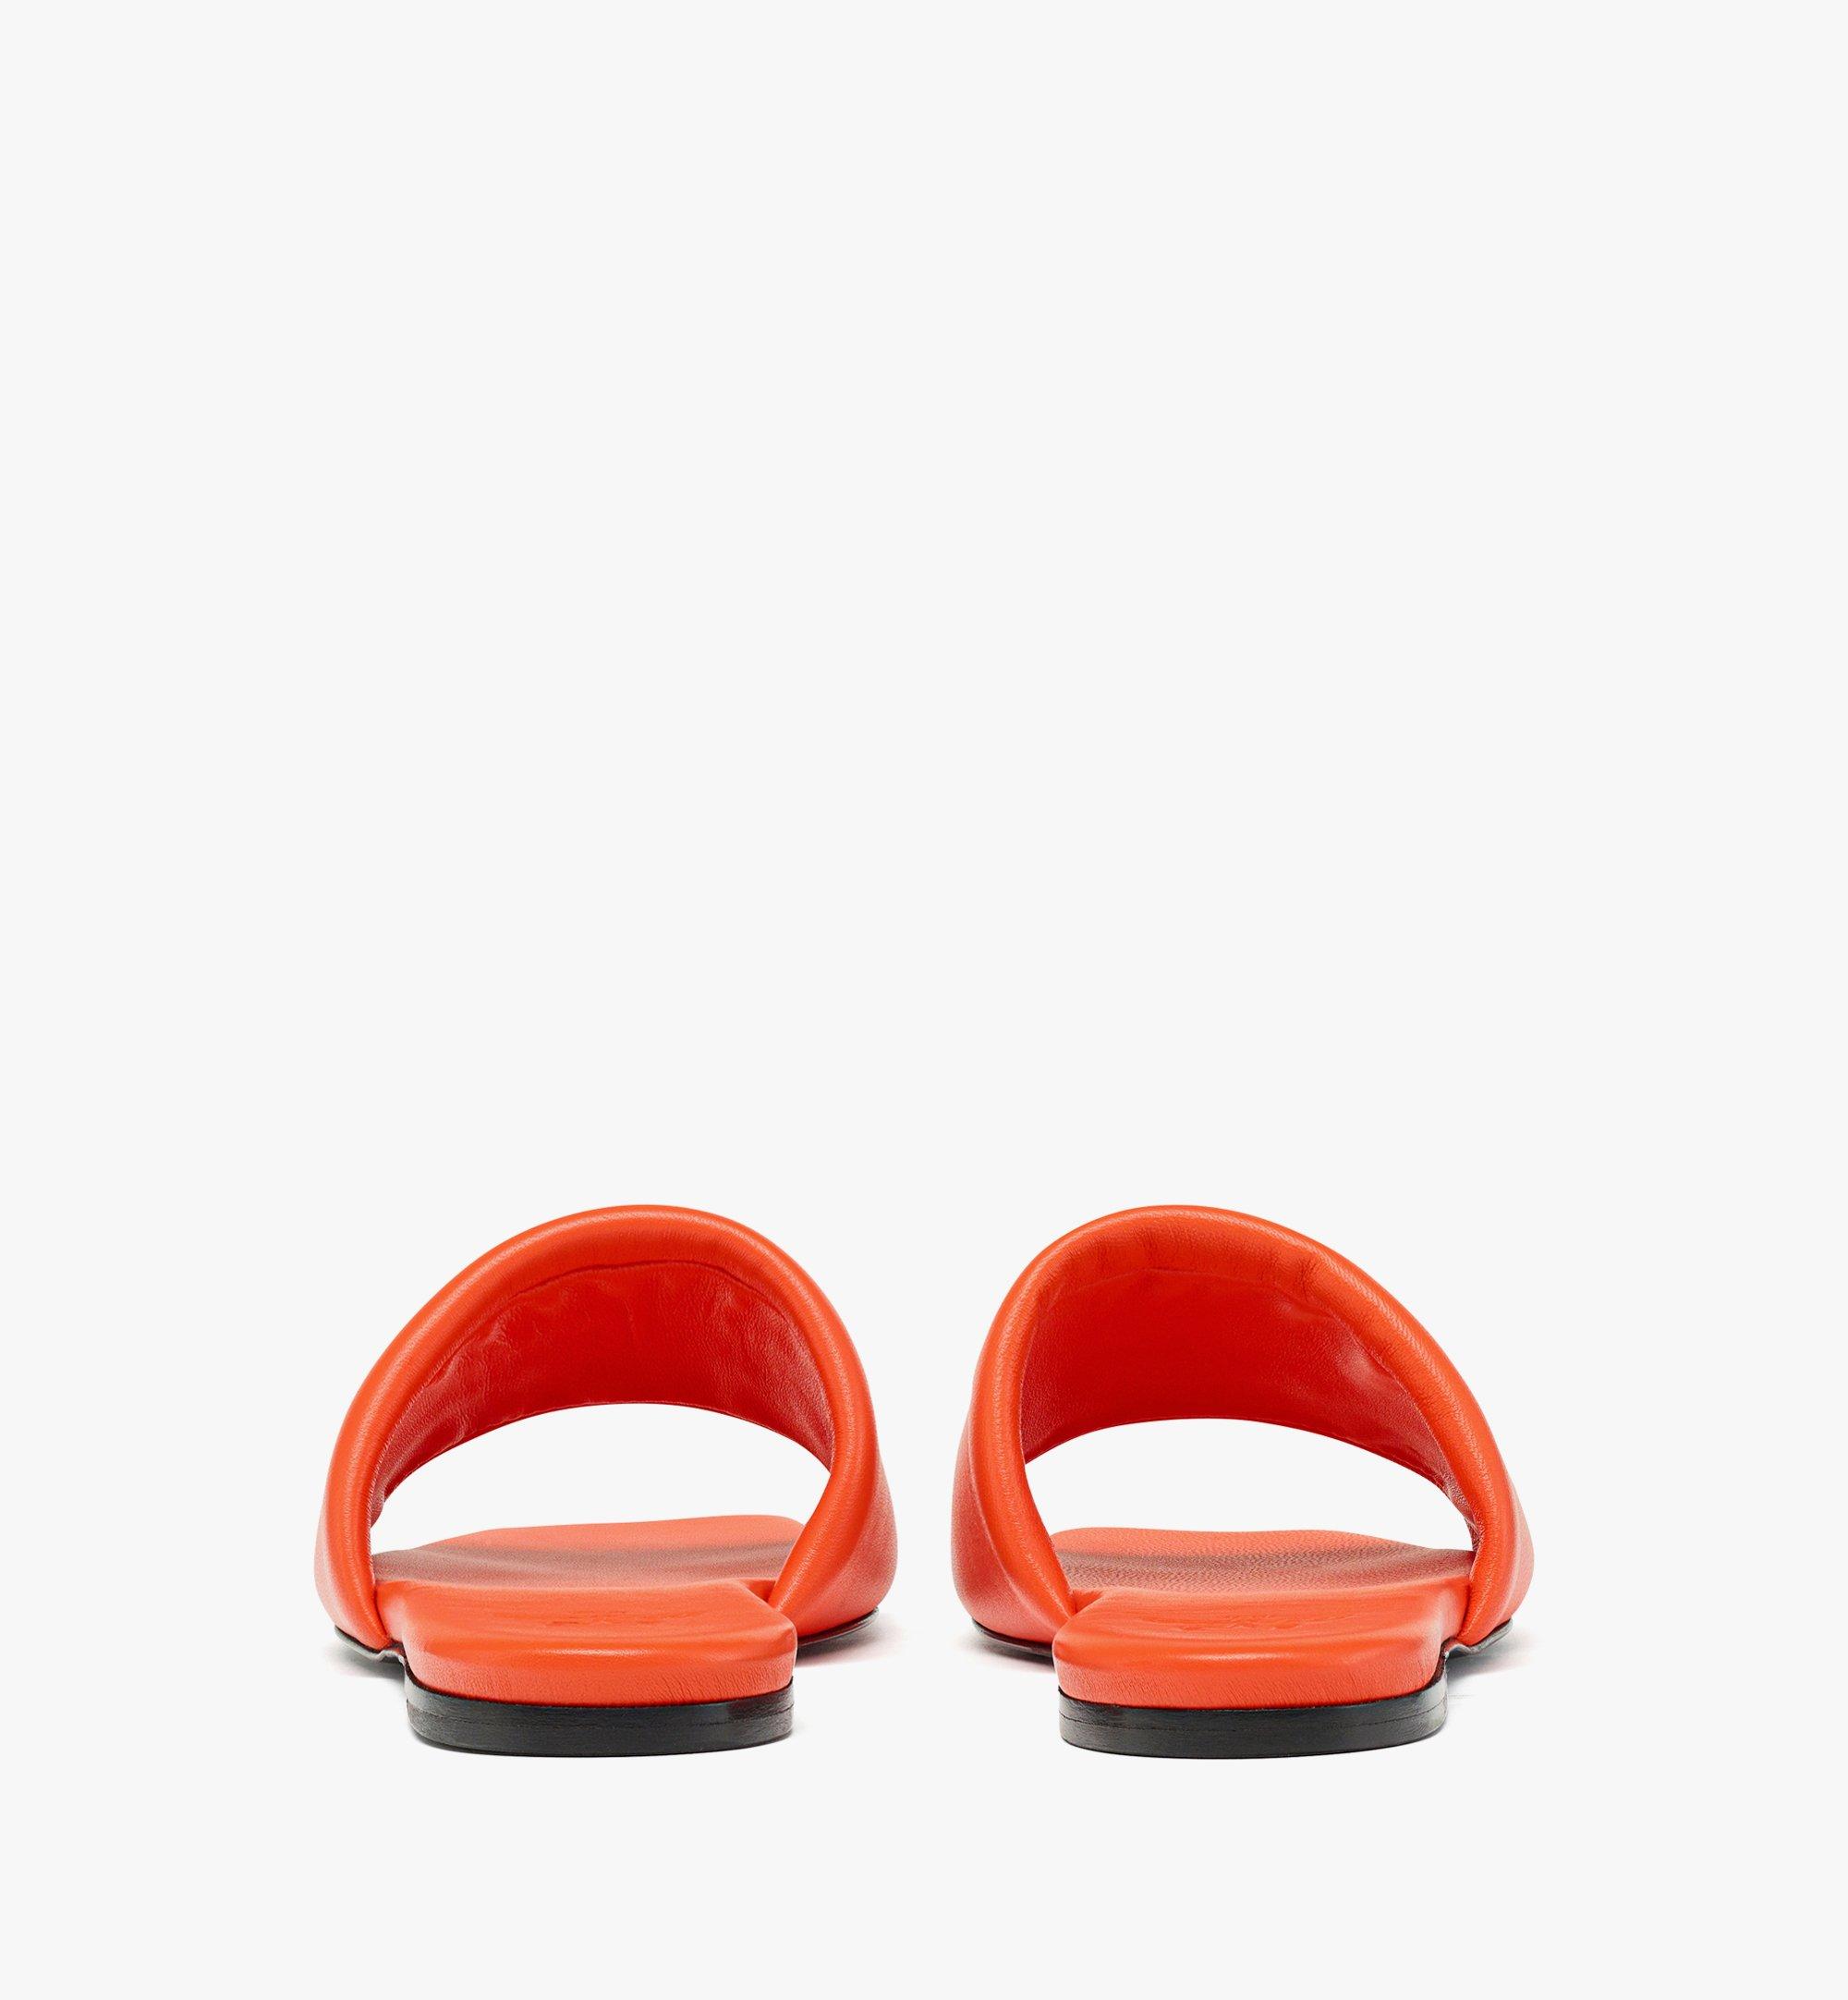 38 IT Laurel Flat Sandals in Lamb Leather Orange | MCM ®US